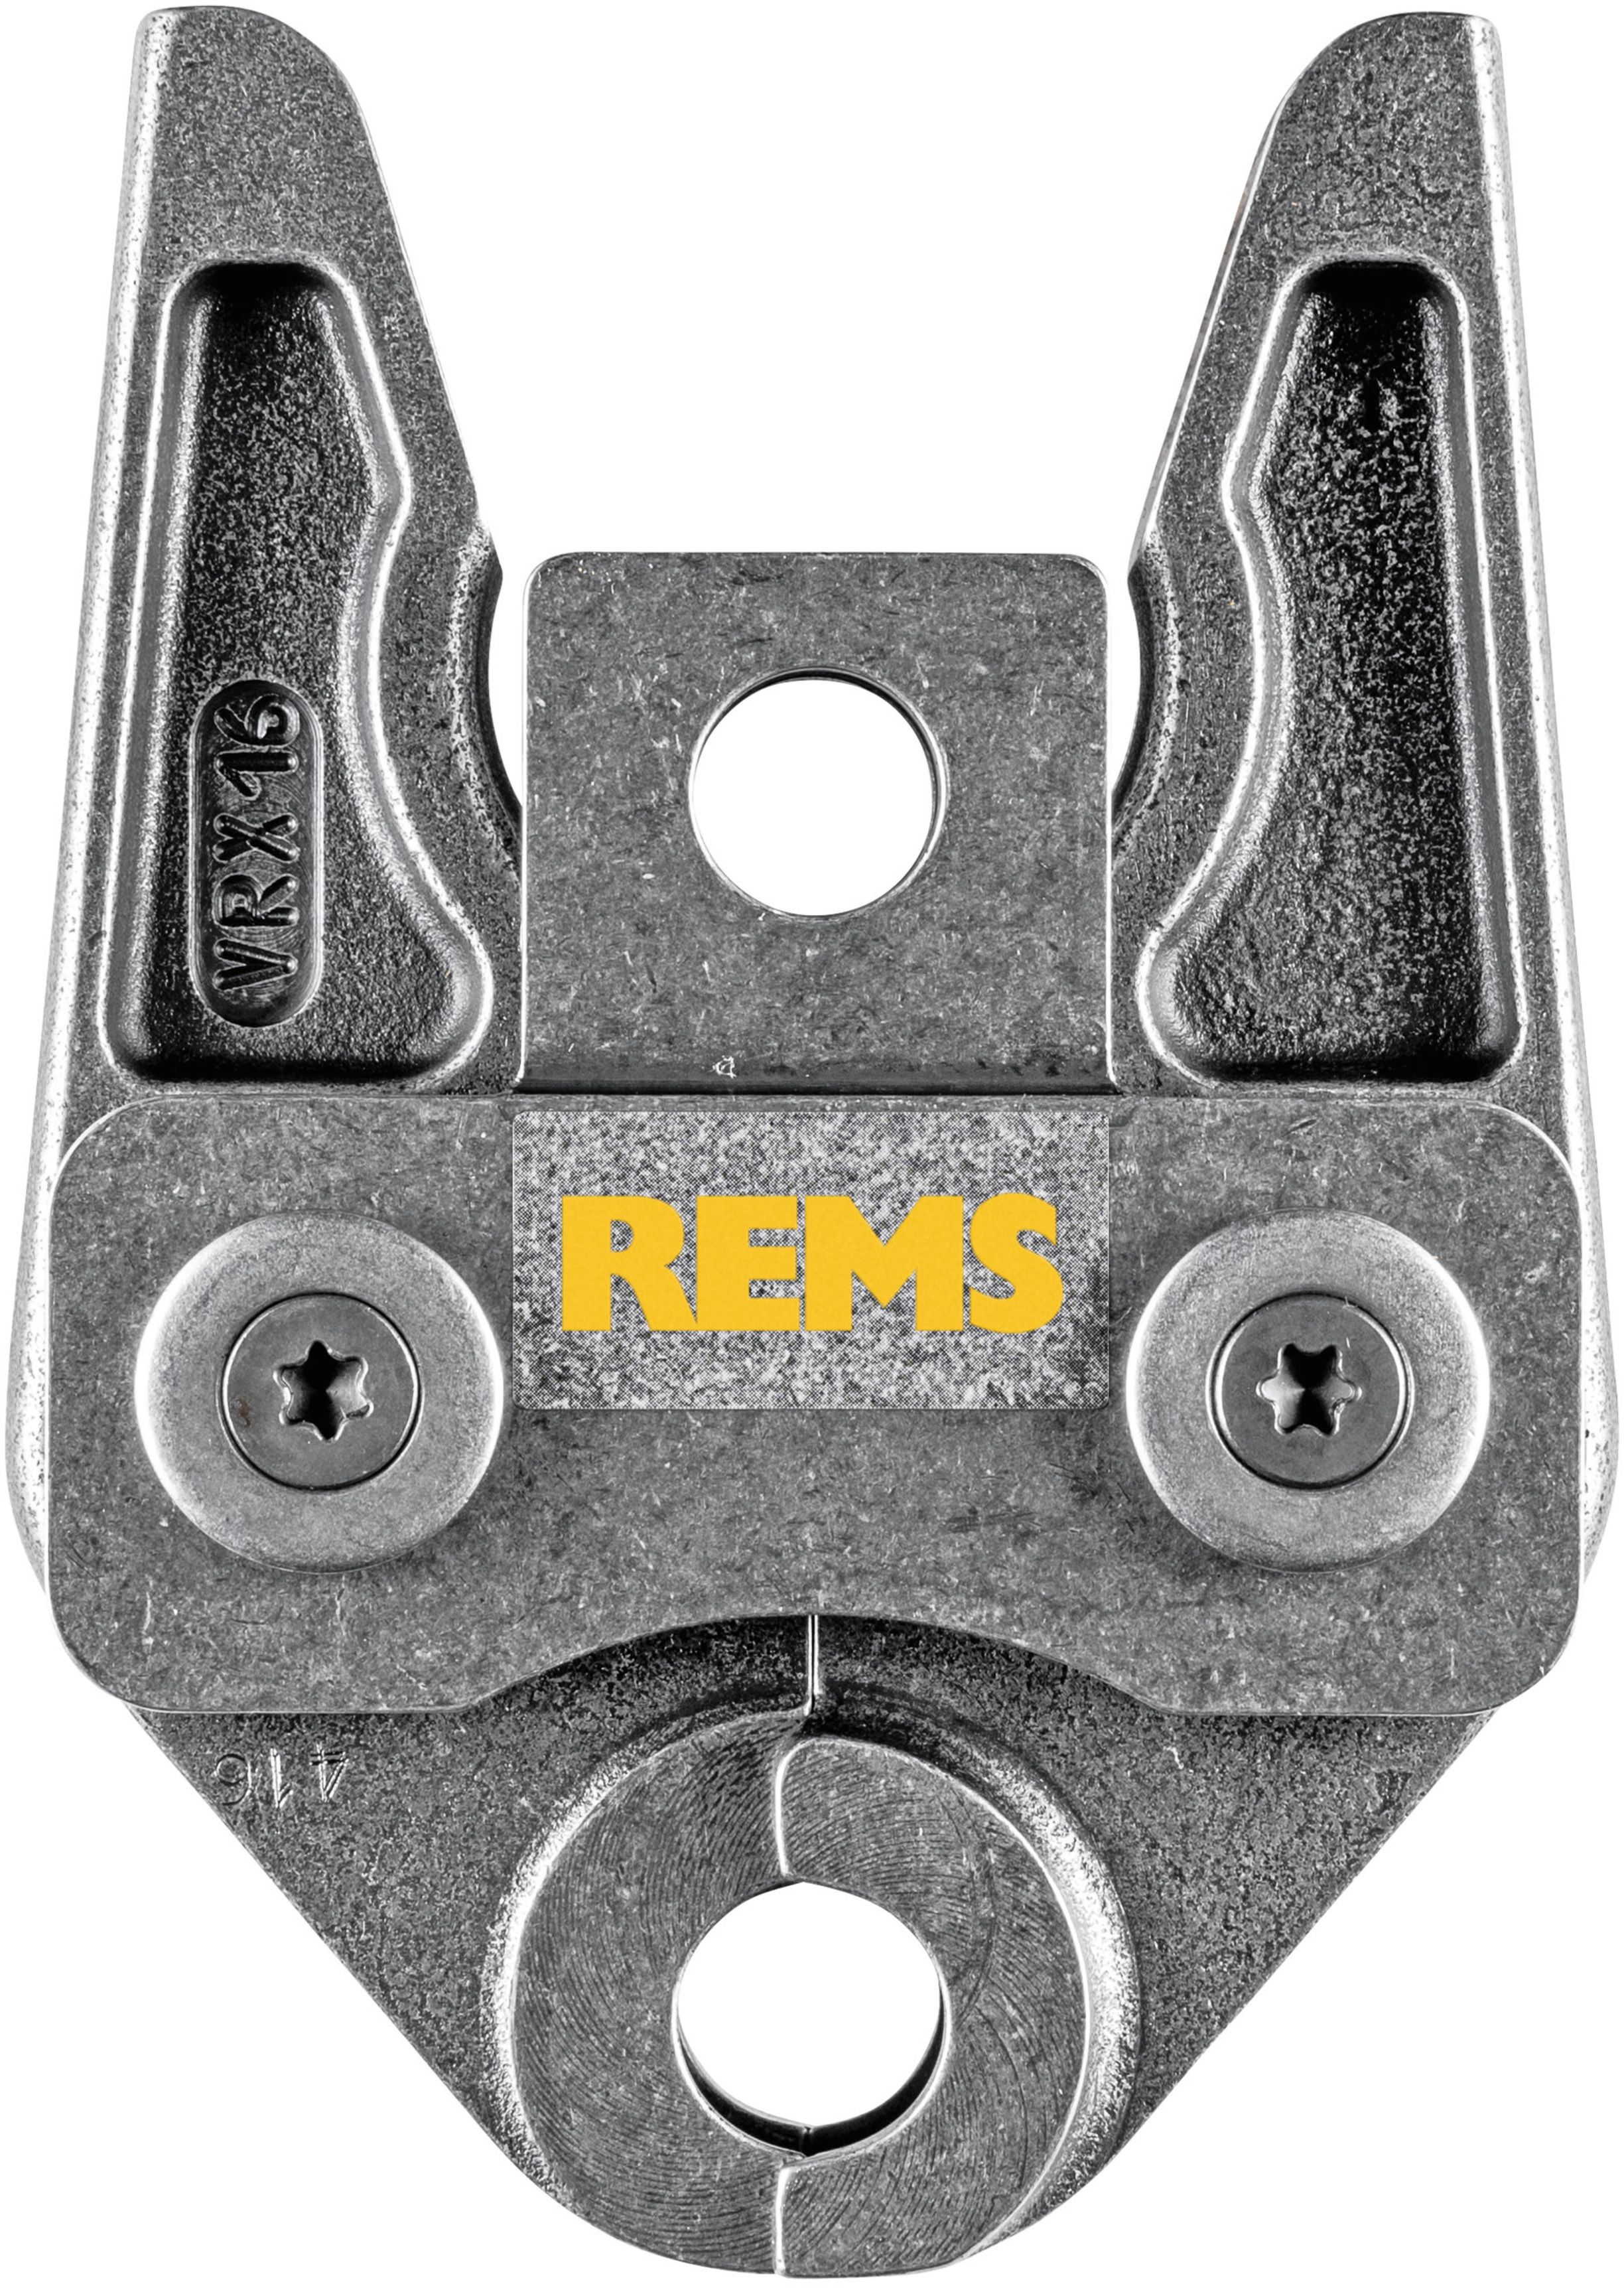 REMS Presszange 571752, VRX 20 - Sanitärwerkzeuge